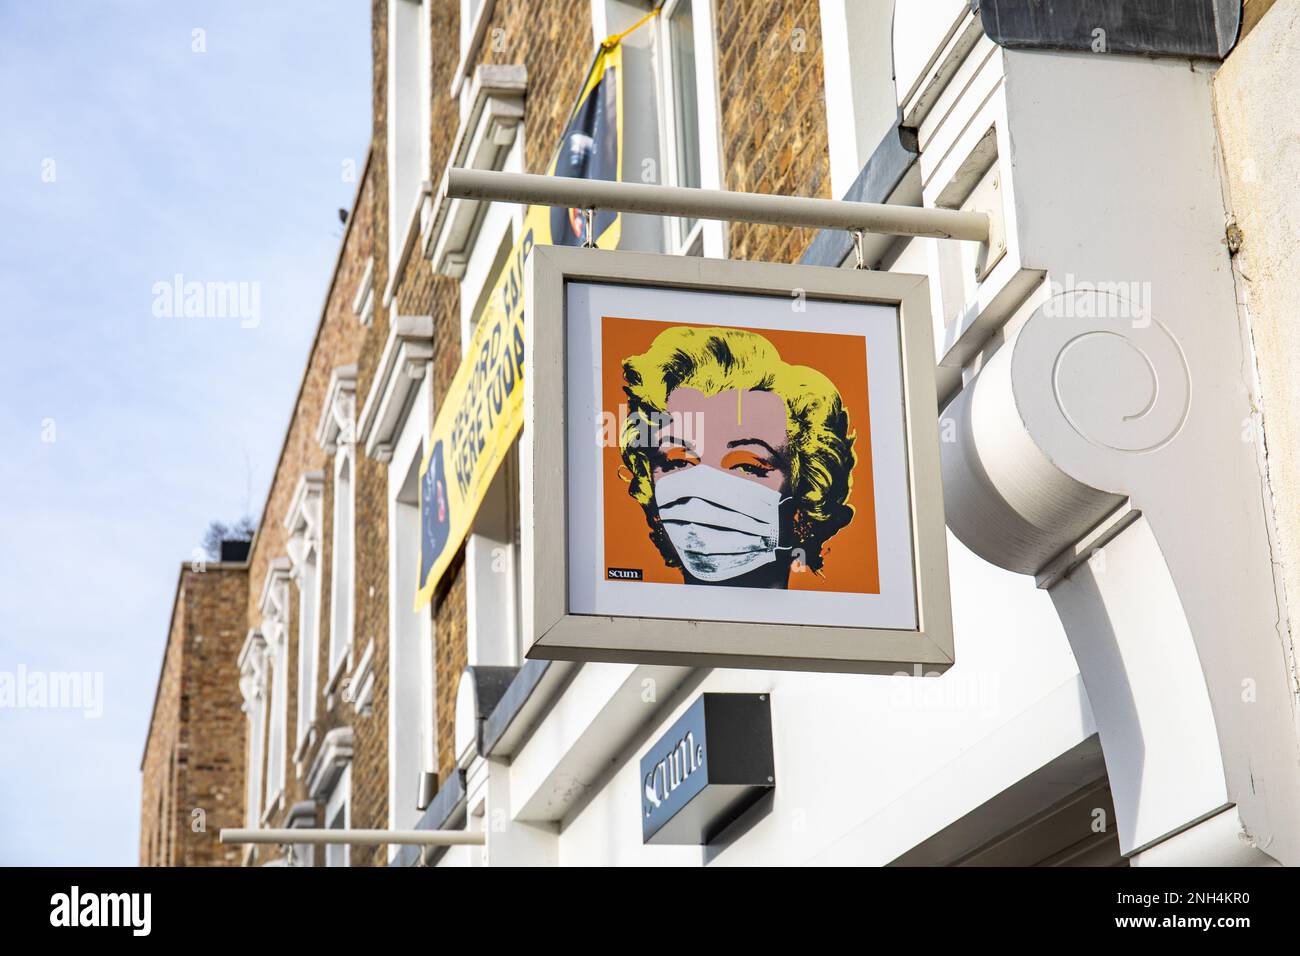 Marilyn Monroe portant un masque sur le panneau de Scum UK dans le quartier de Camden Town de Londres, Angleterre Banque D'Images